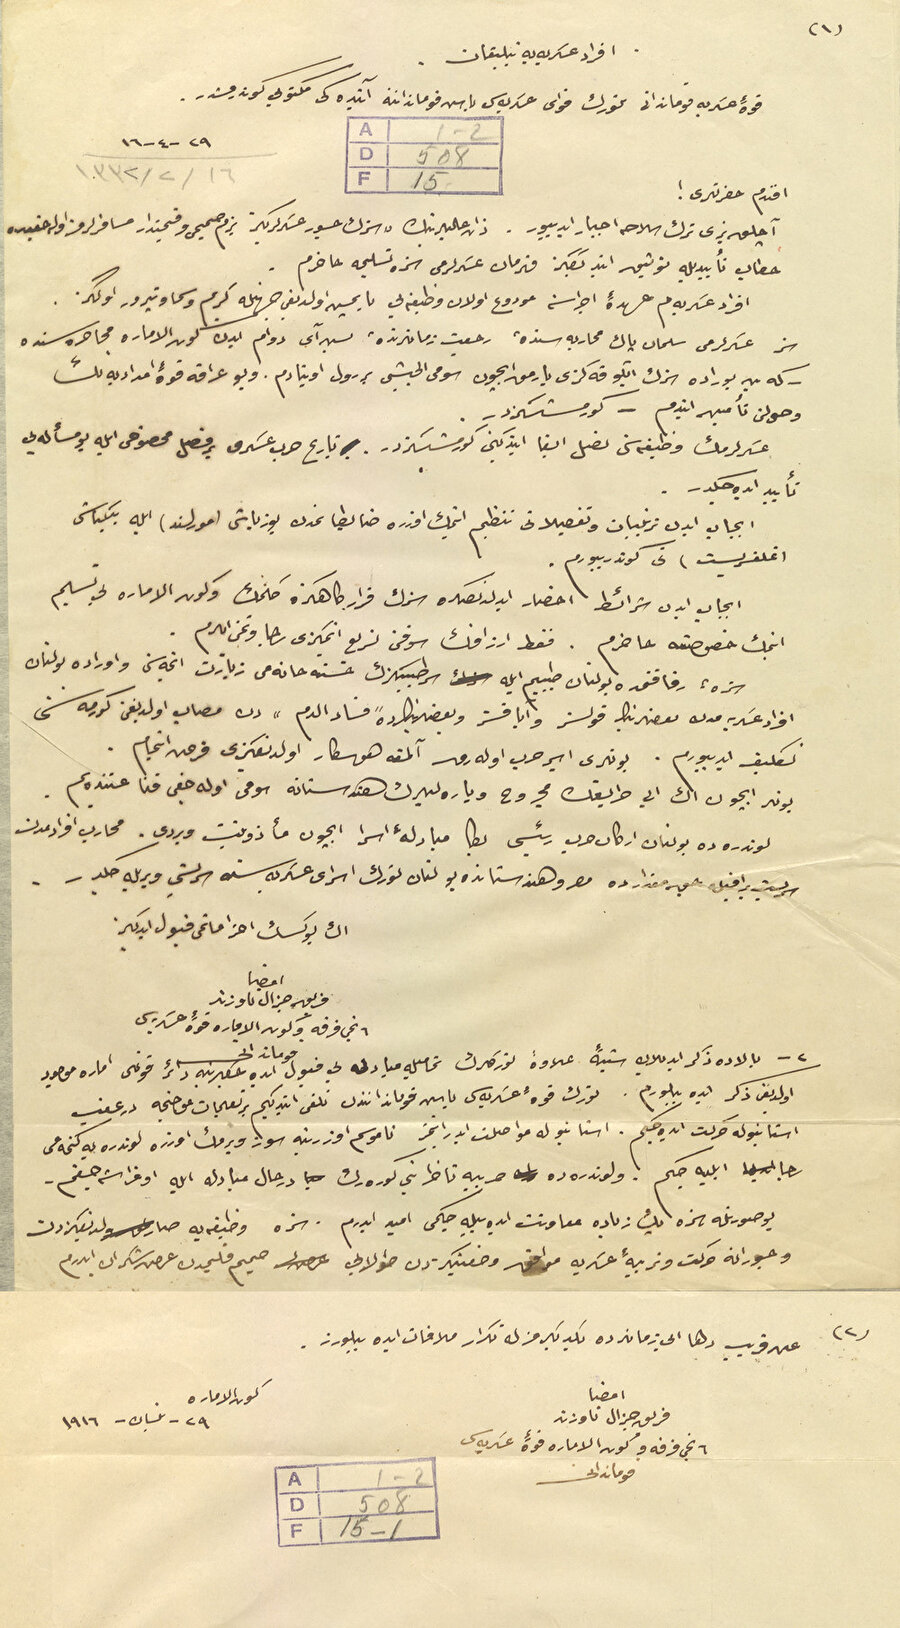 İngilizlerin 29 Nisan 1916 tarihli teslim belgesi.